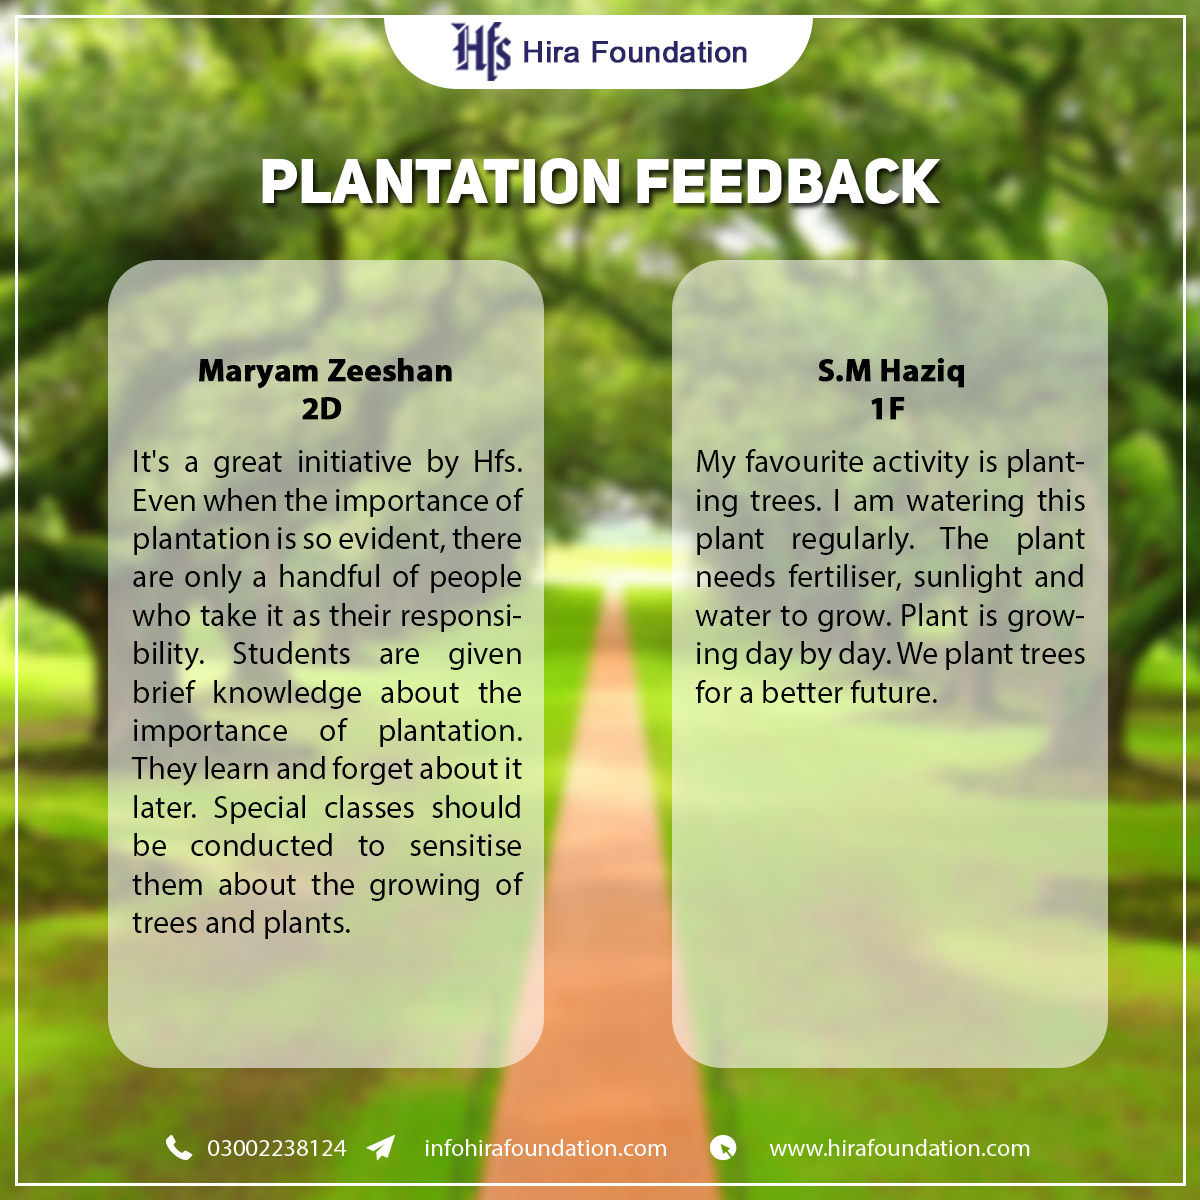 Plantation feedback